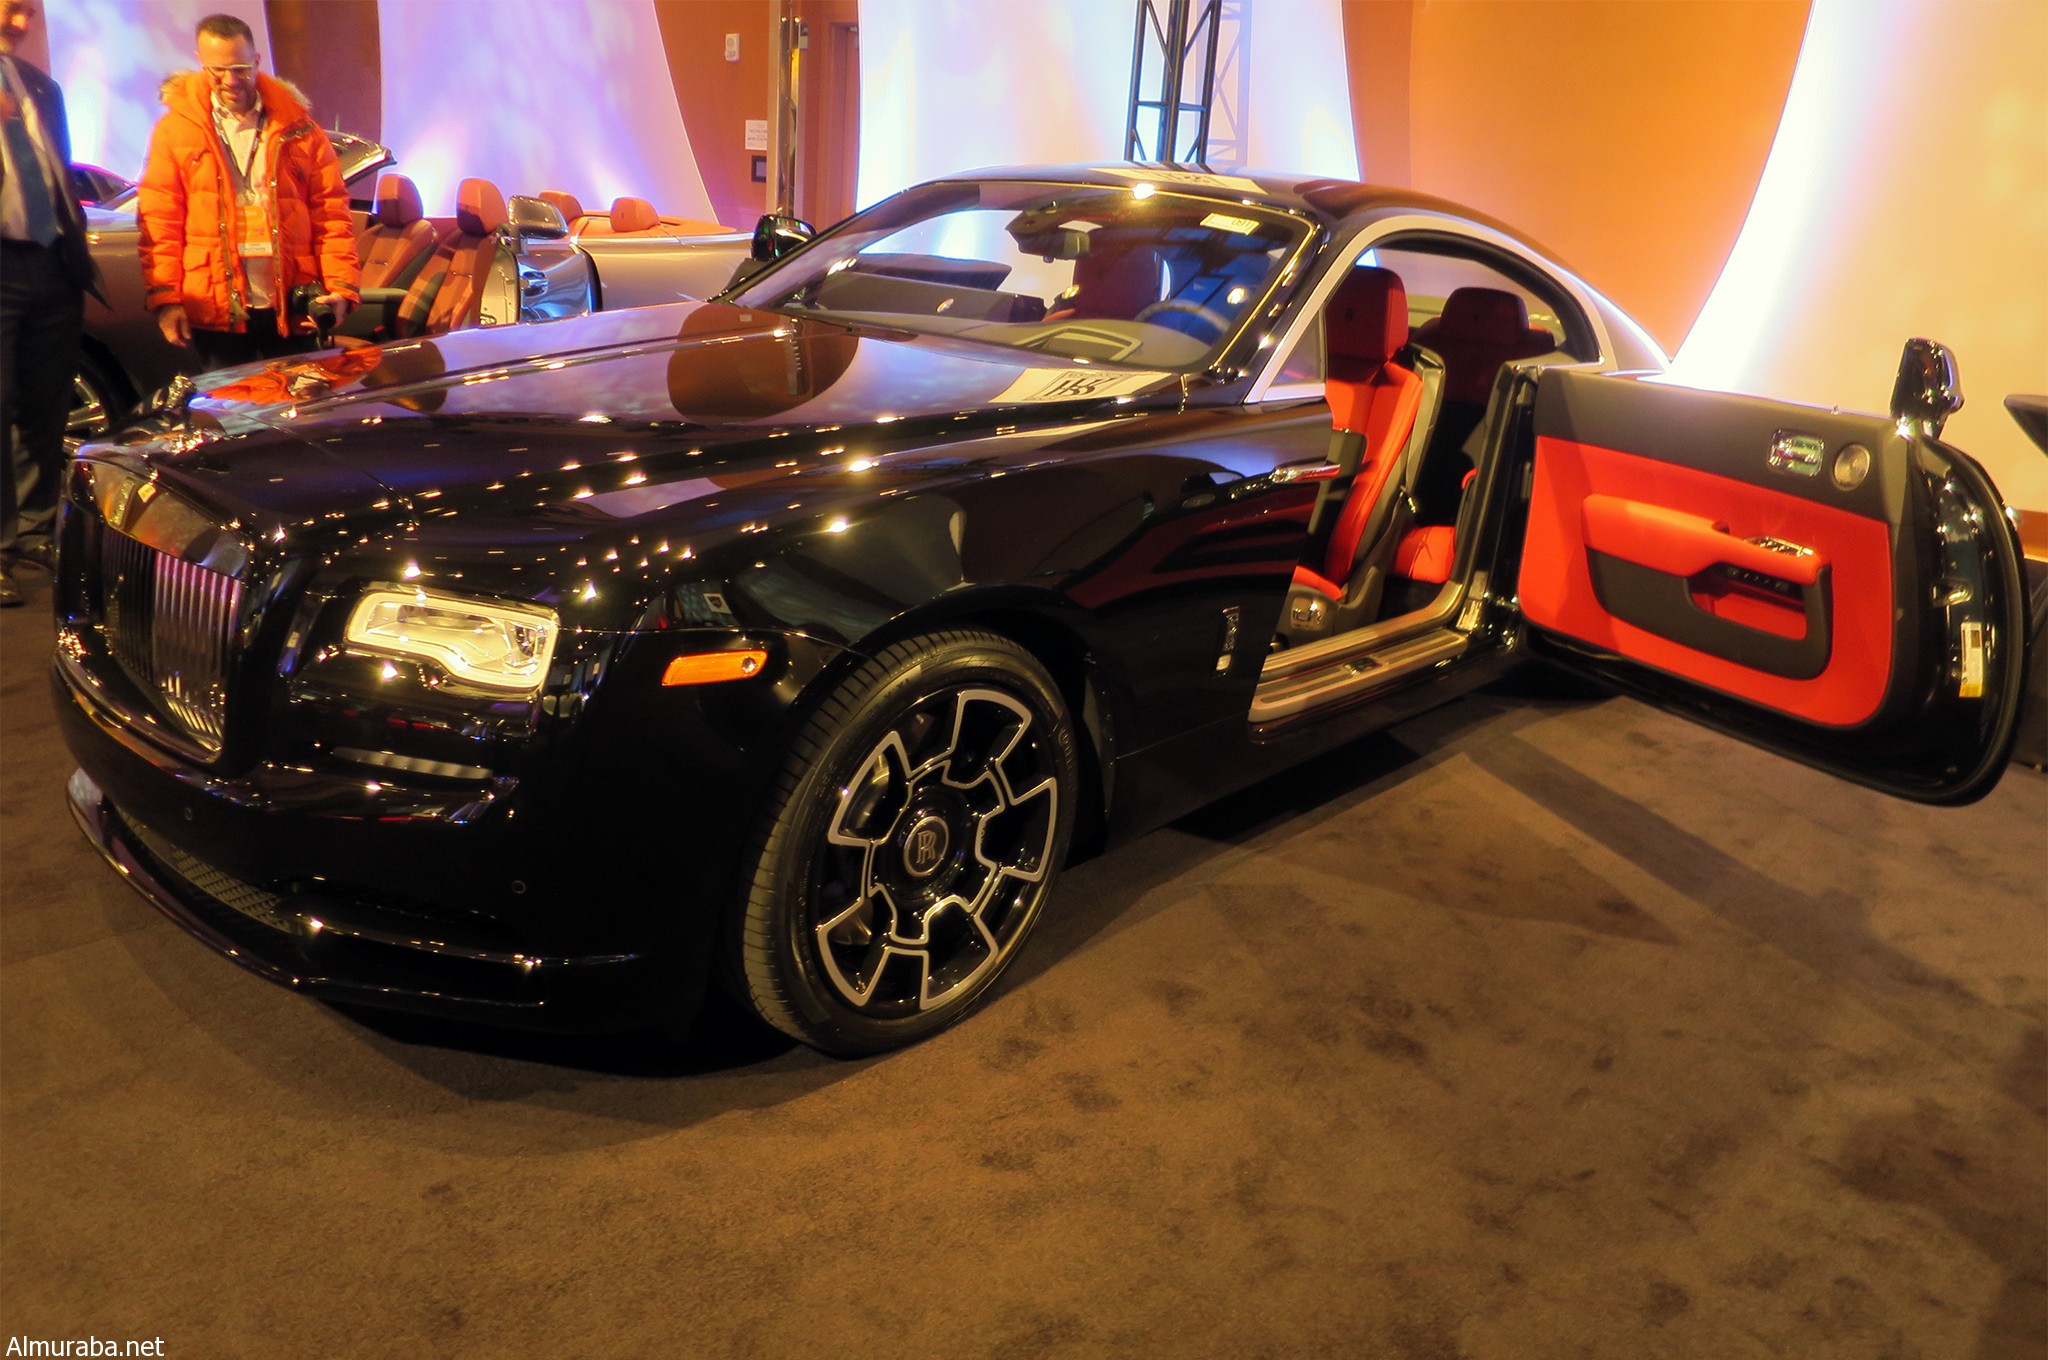 "بالصور" شاهد "رولز رويس" رايث بلاك بادج كوبيه ذات العجلات الكربونية بديترويت Rolls-Royce Wraith Black Badge Coupe 37